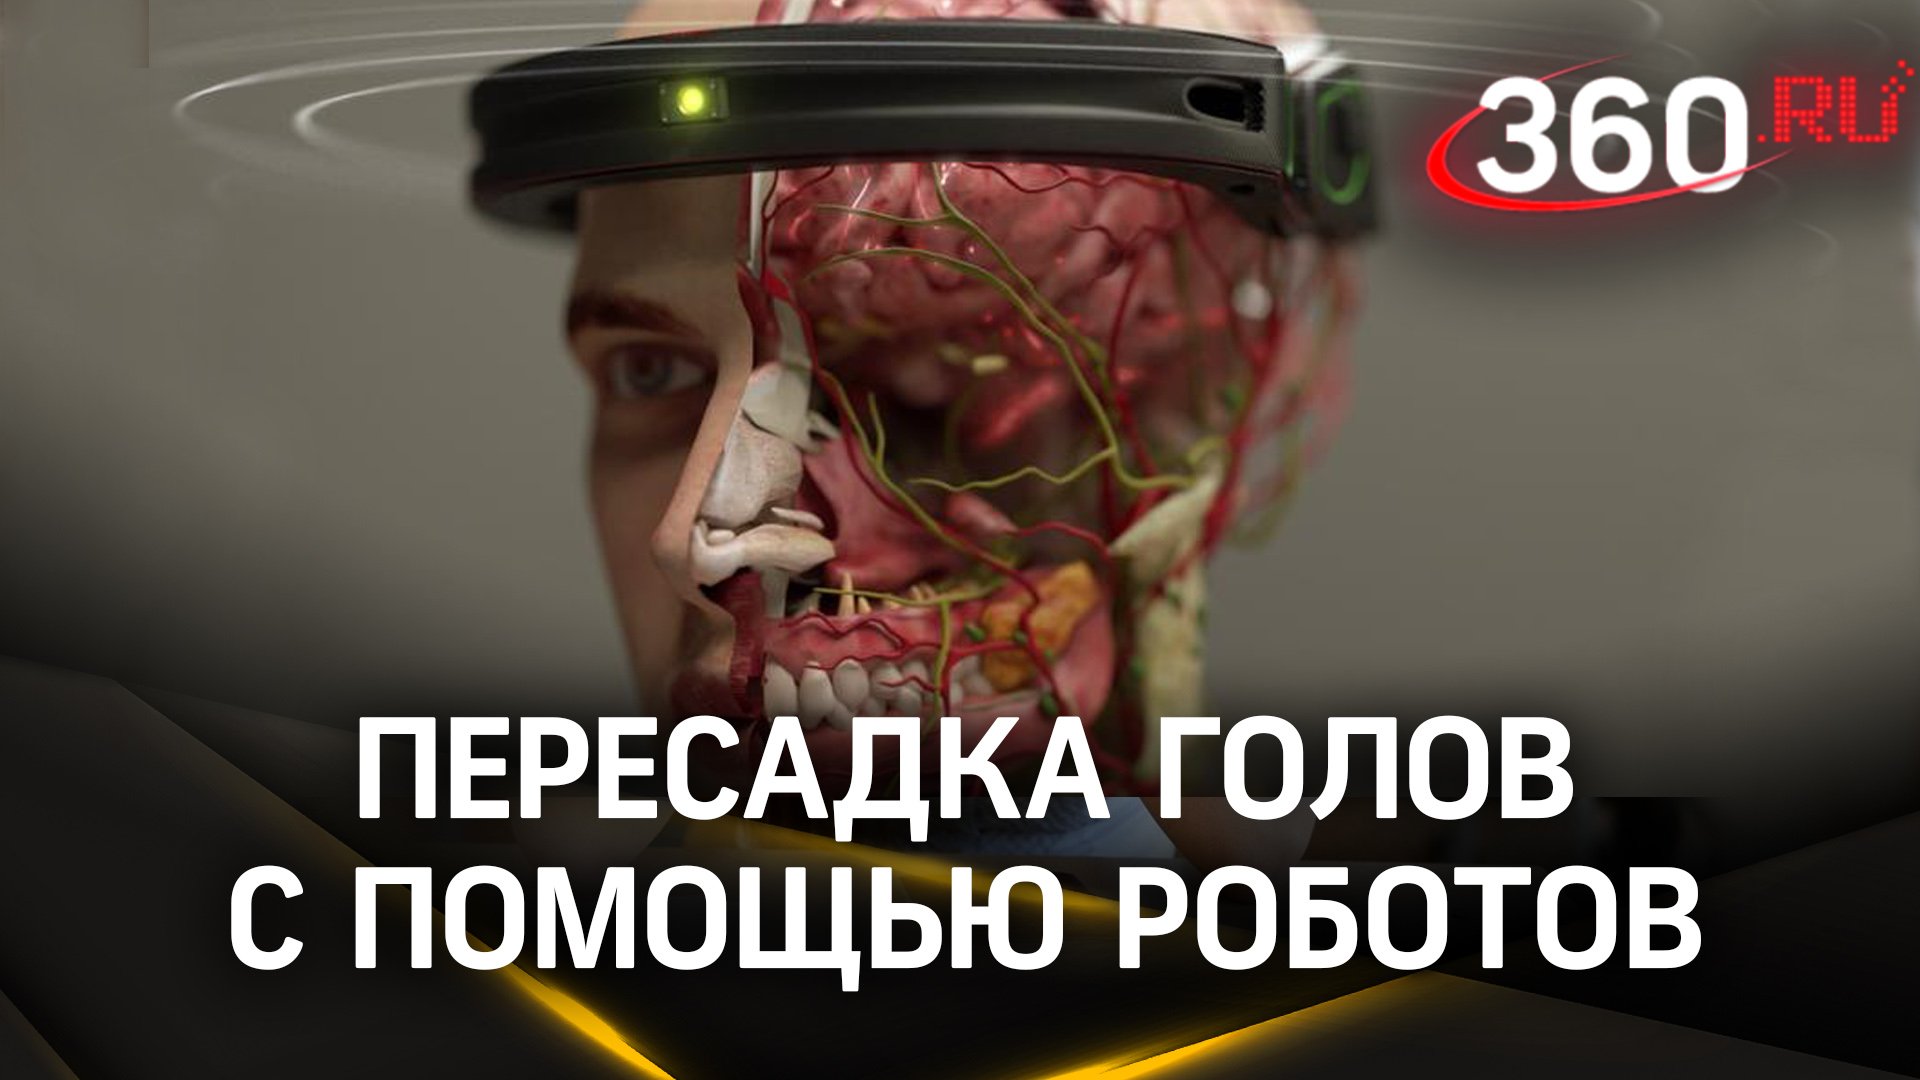 Пересадка головы реальна: робот-хирург склеивает спинной мозг с головным, чтобы спасти пациента